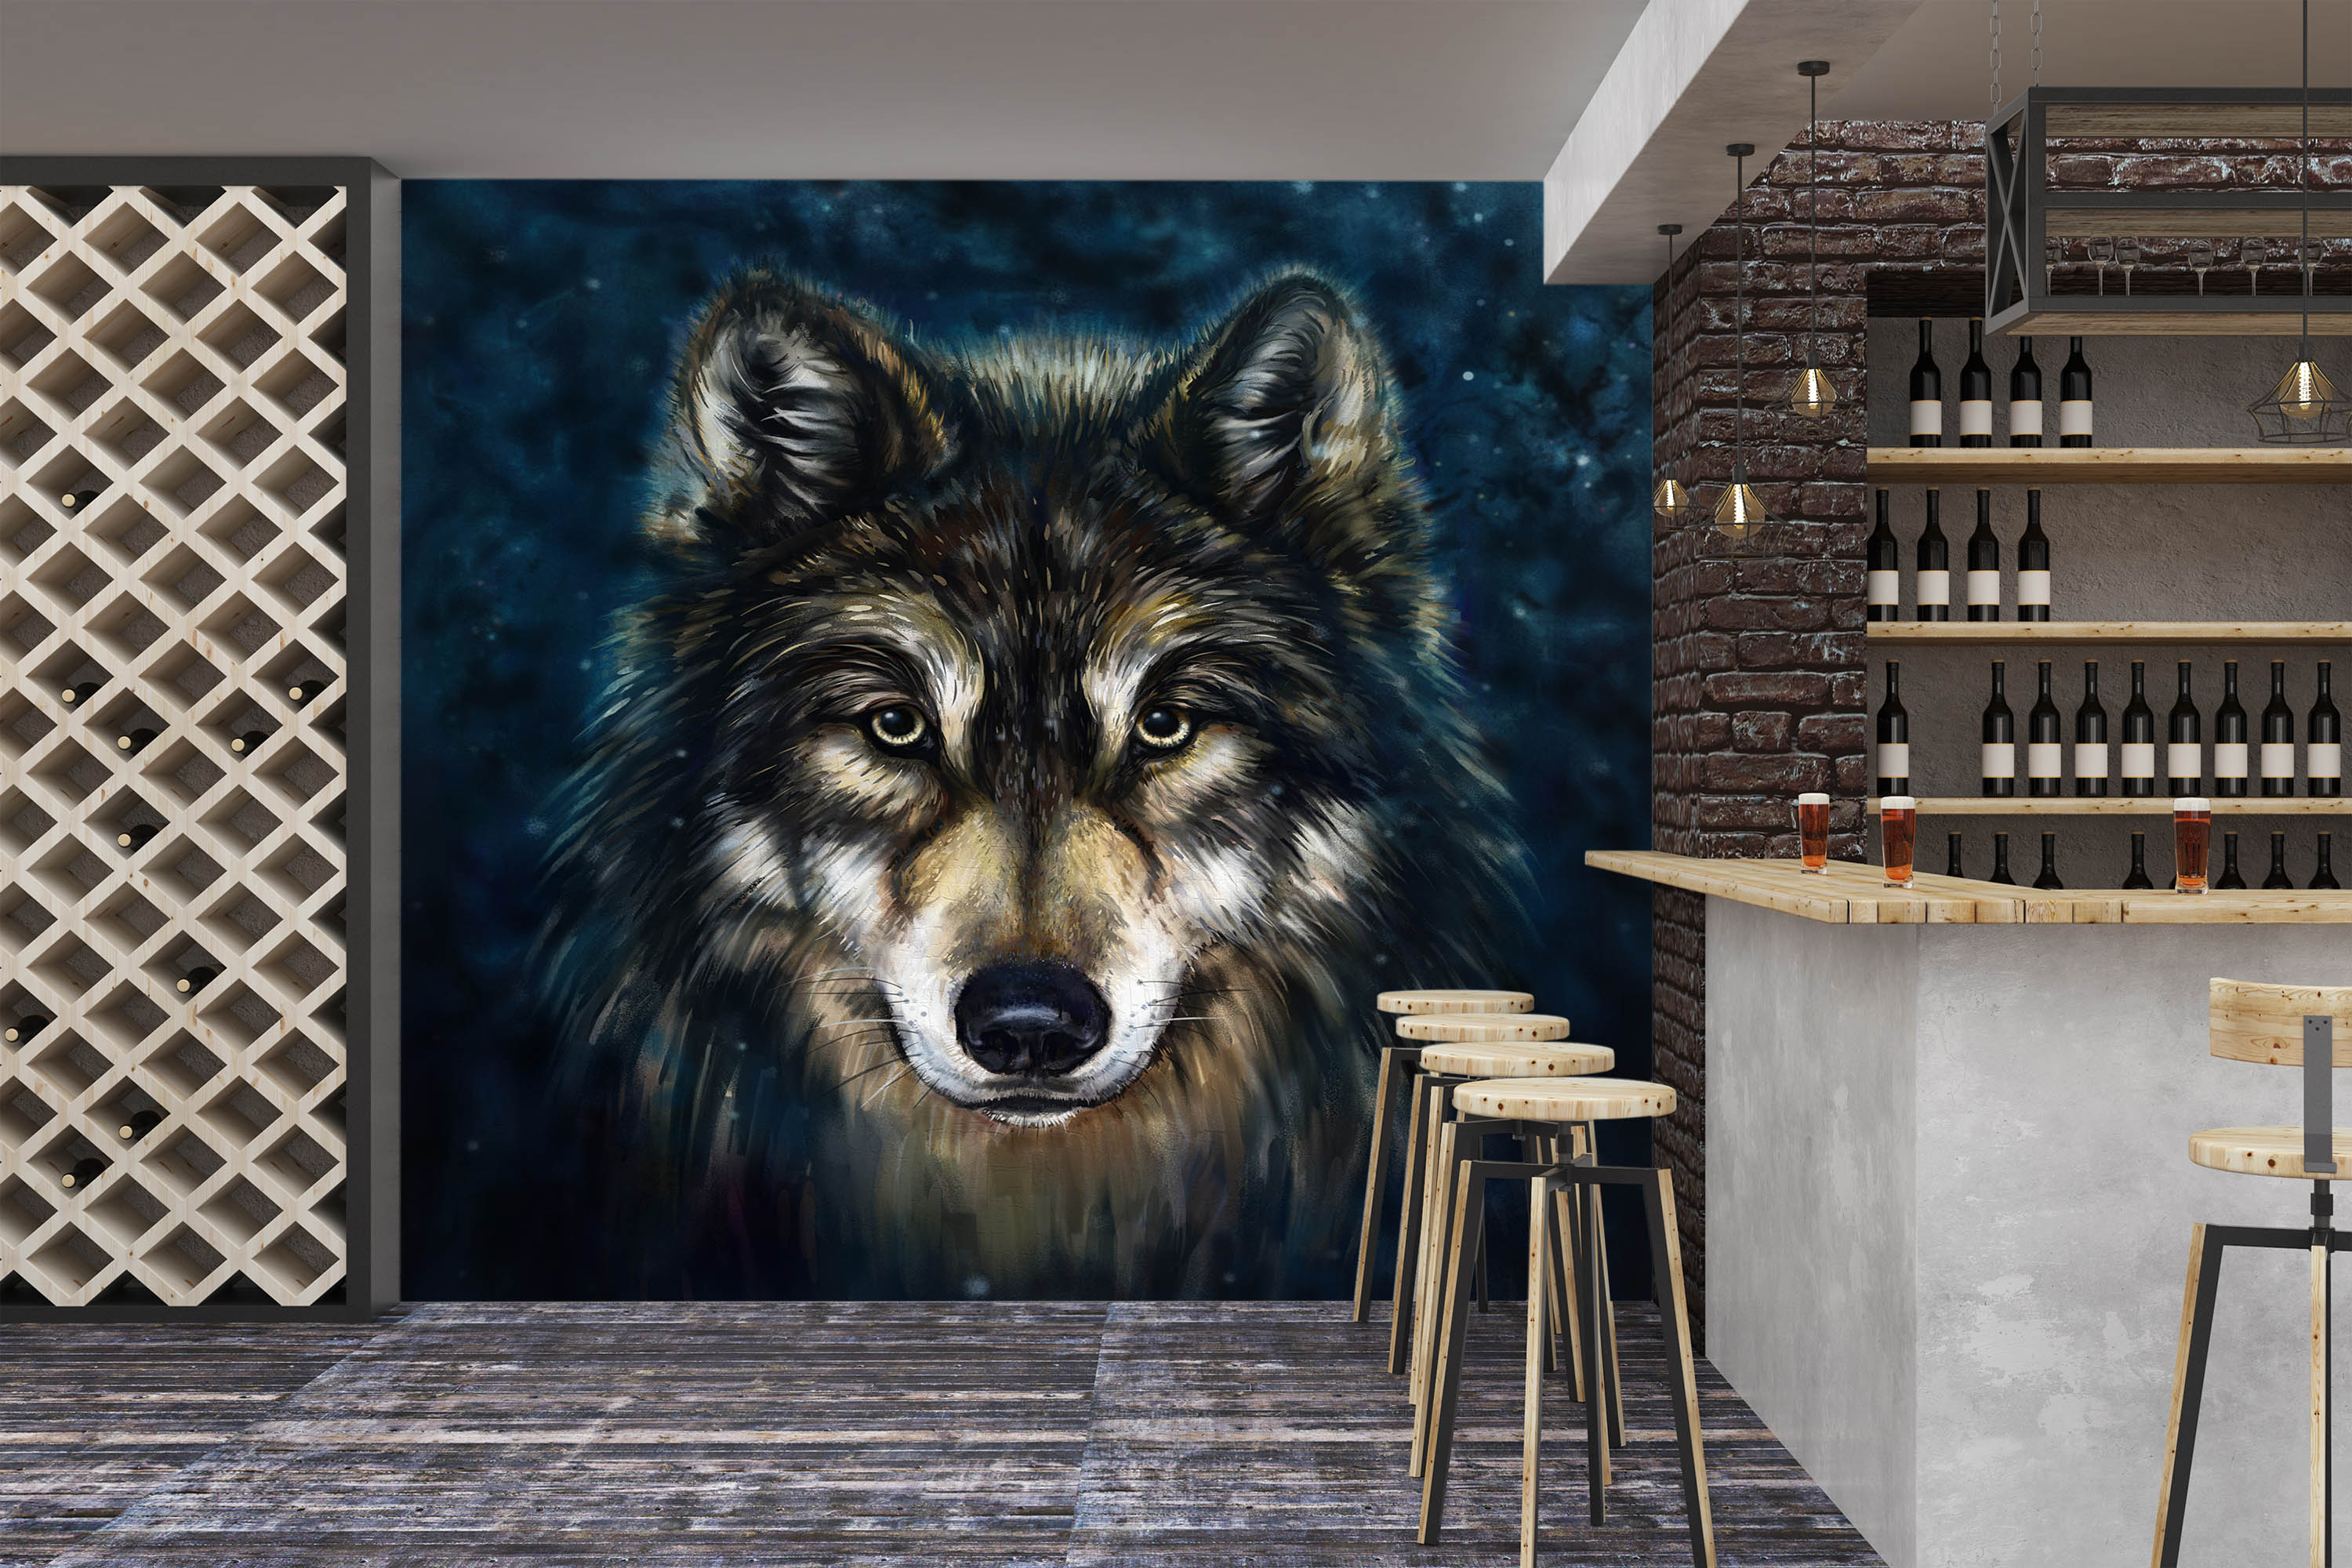 3D Wolf 57190 Wall Murals